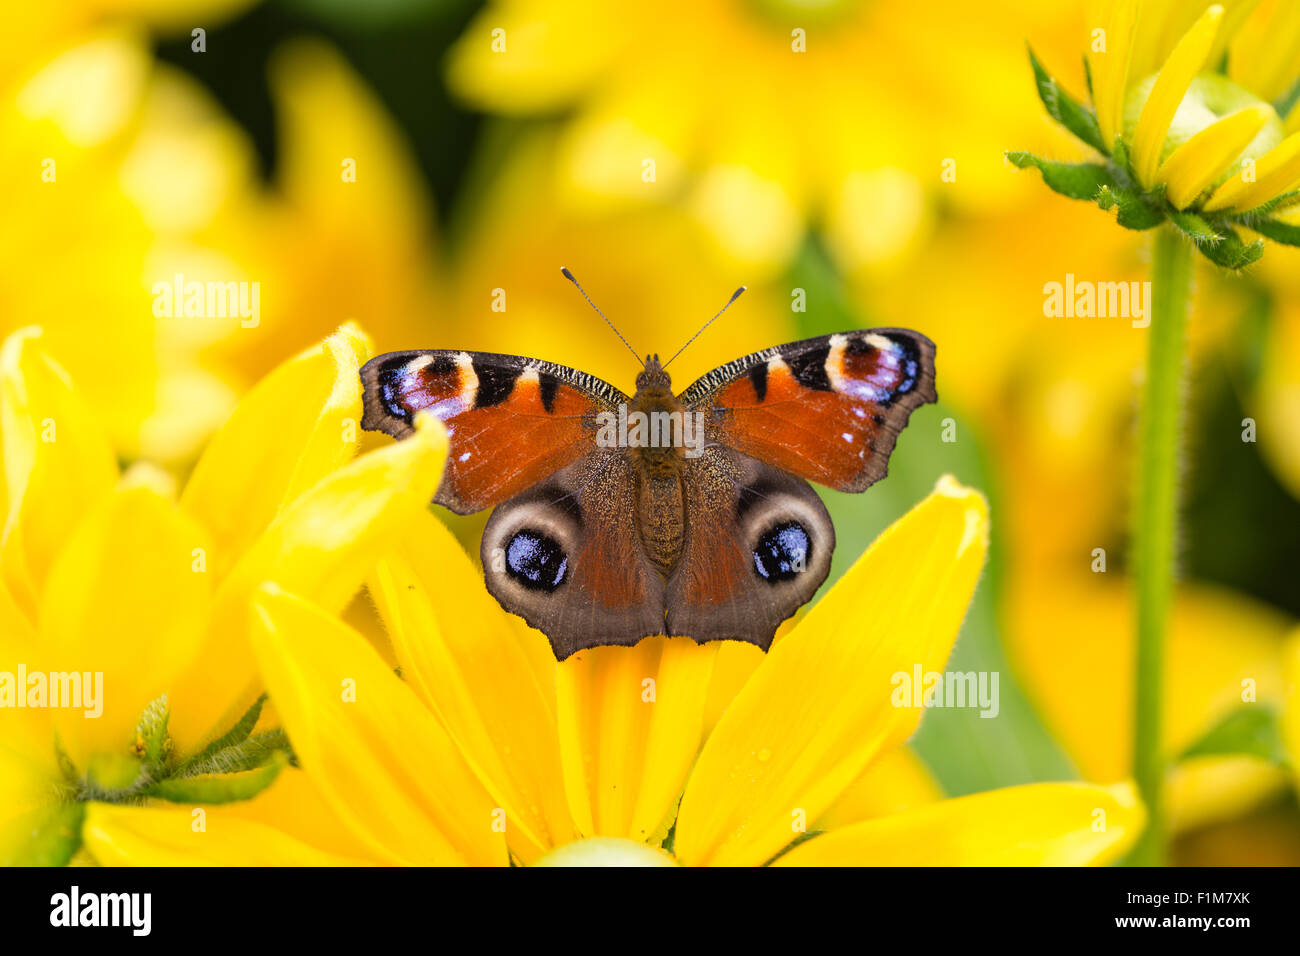 Mariposa Pavo Real europeo tomando el sol en una flor amarilla Foto de stock